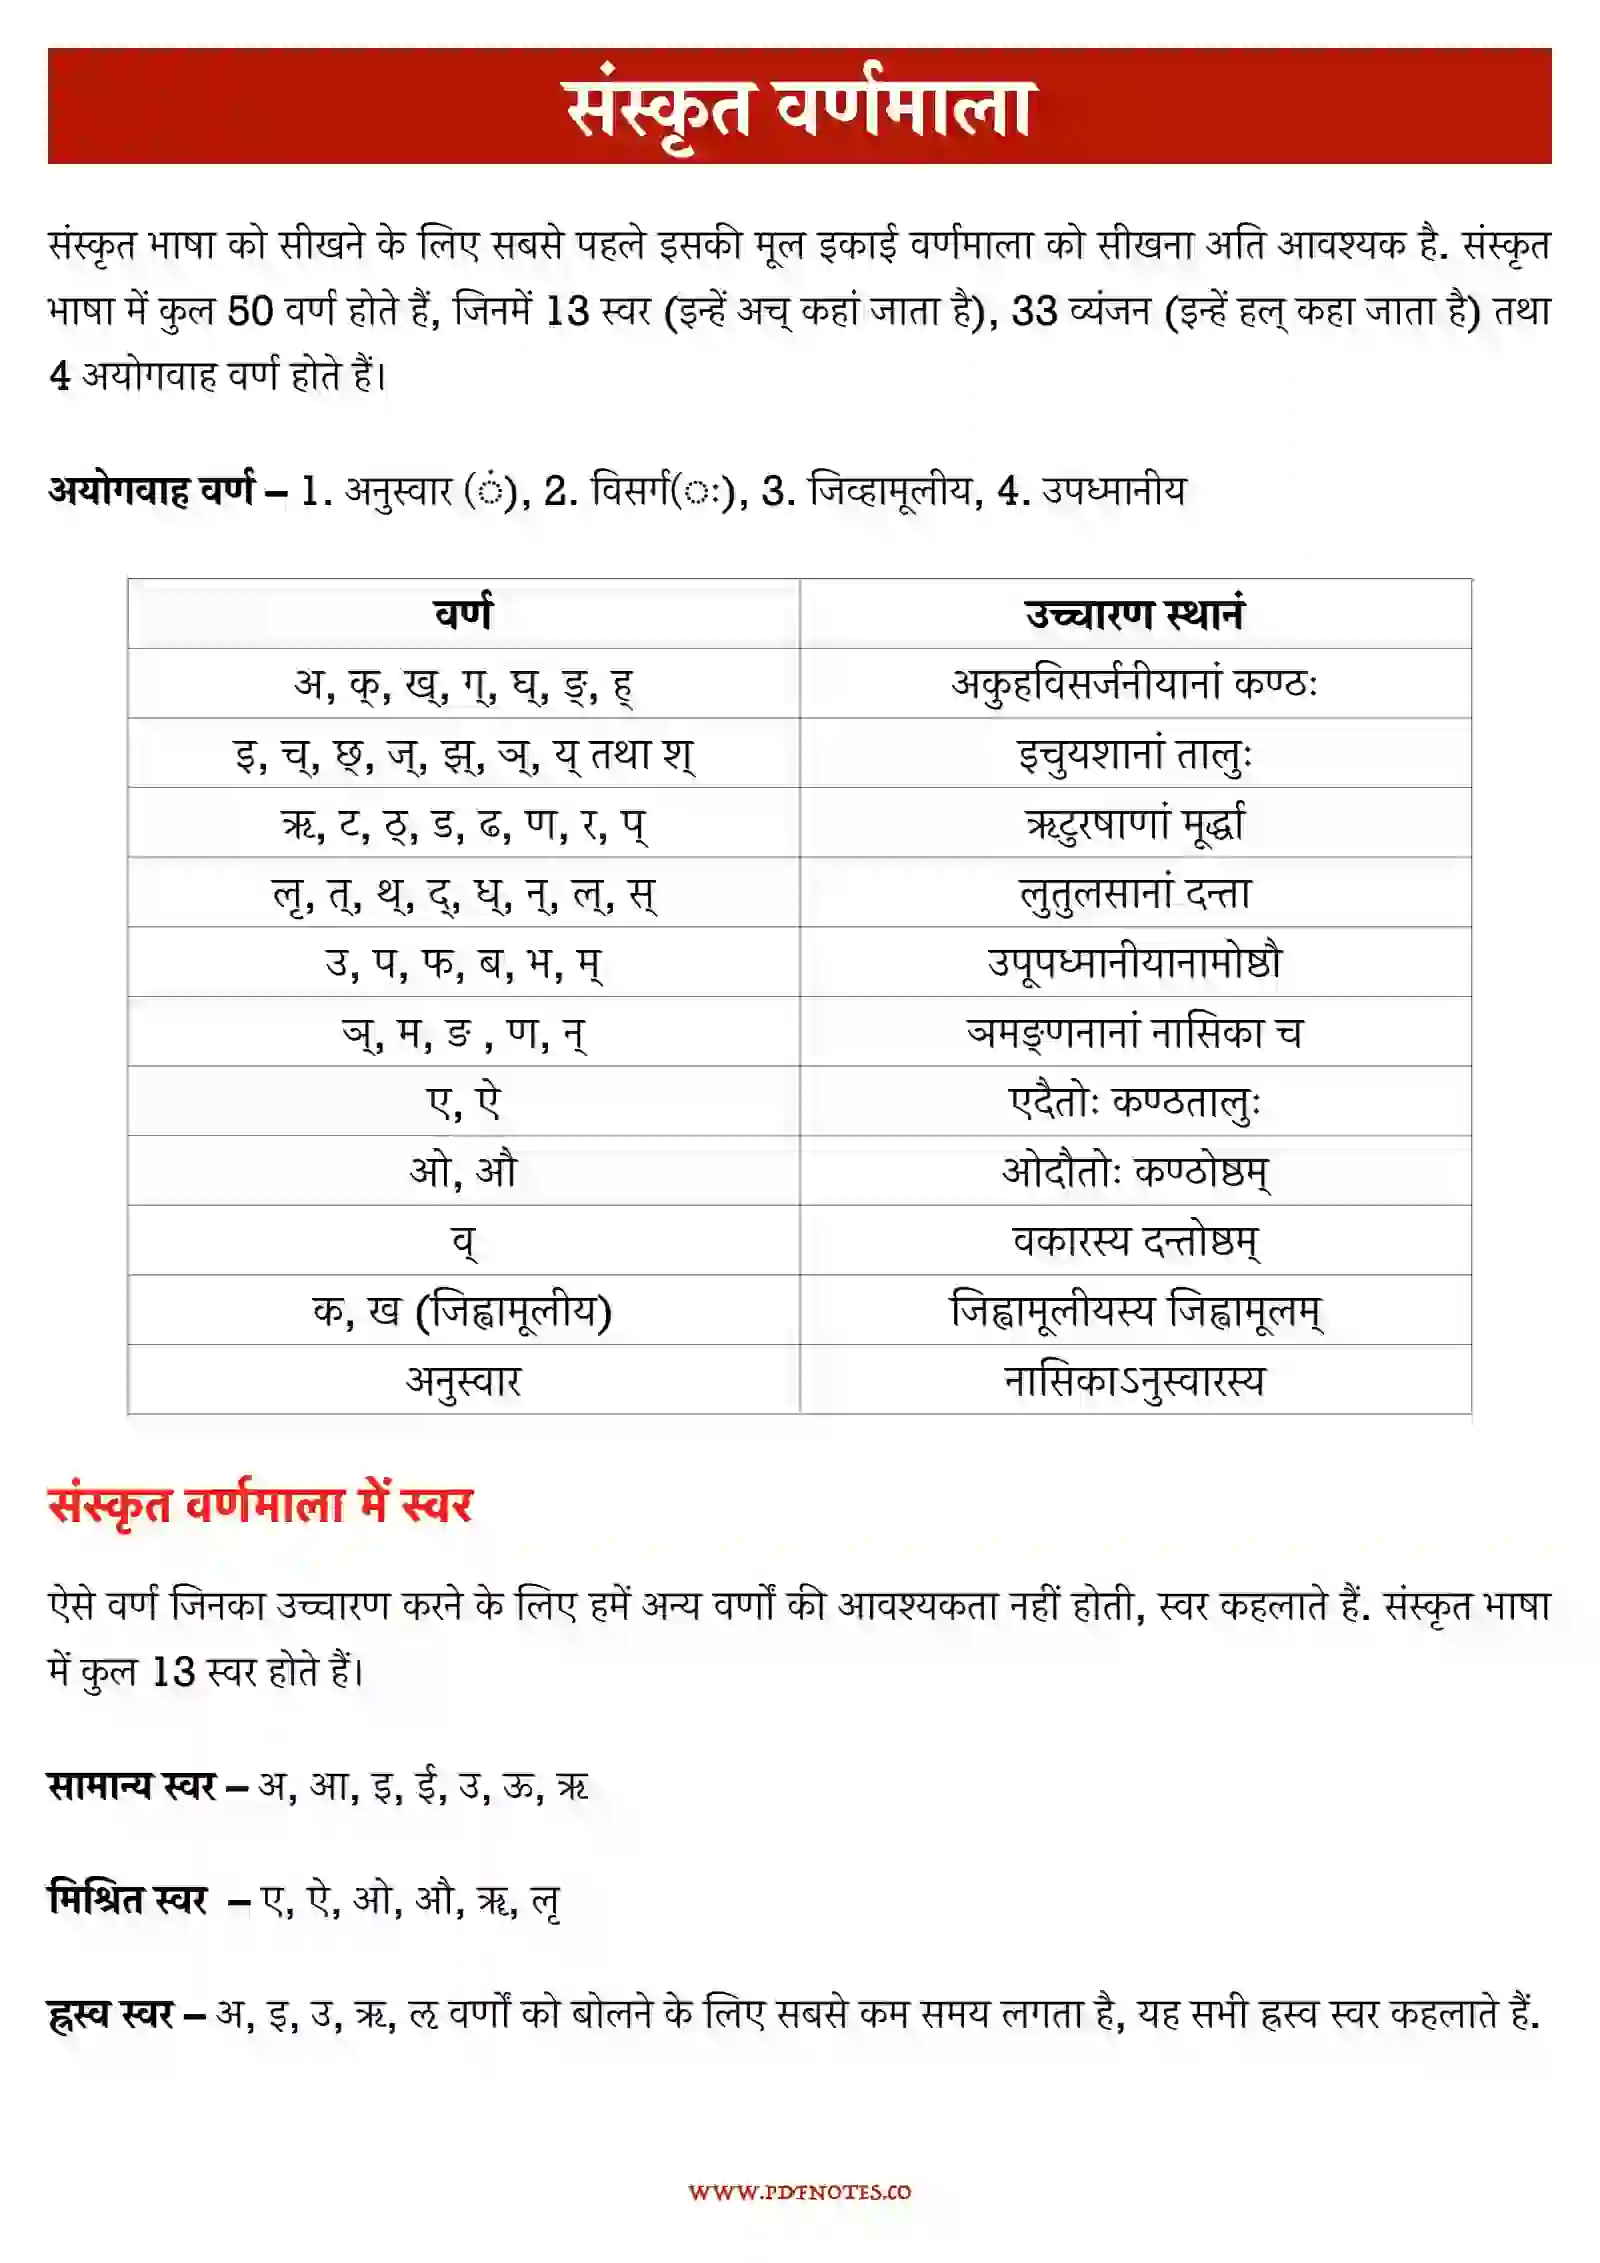 संस्कृत वर्णमाला | Sanskrit Alphabet Chart PDF